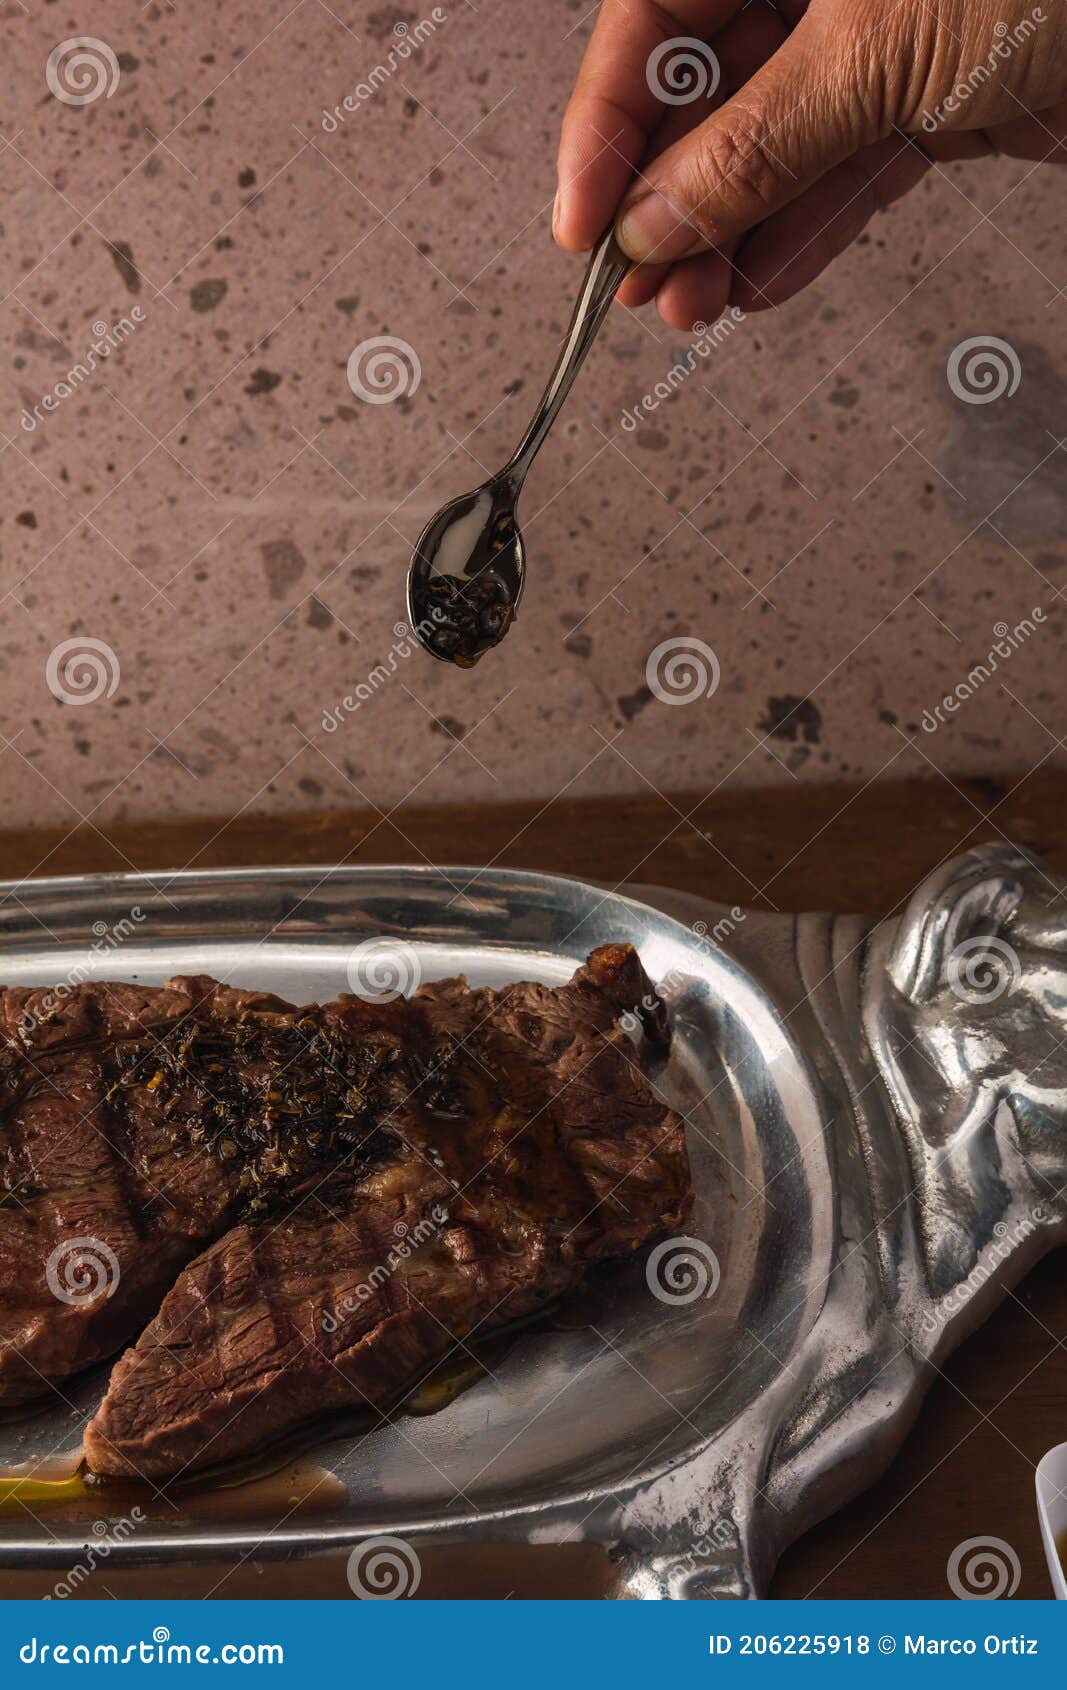 cut of meat `aguja norteÃÂ±a sonora`, served on a silver plate in the  of a cow 12